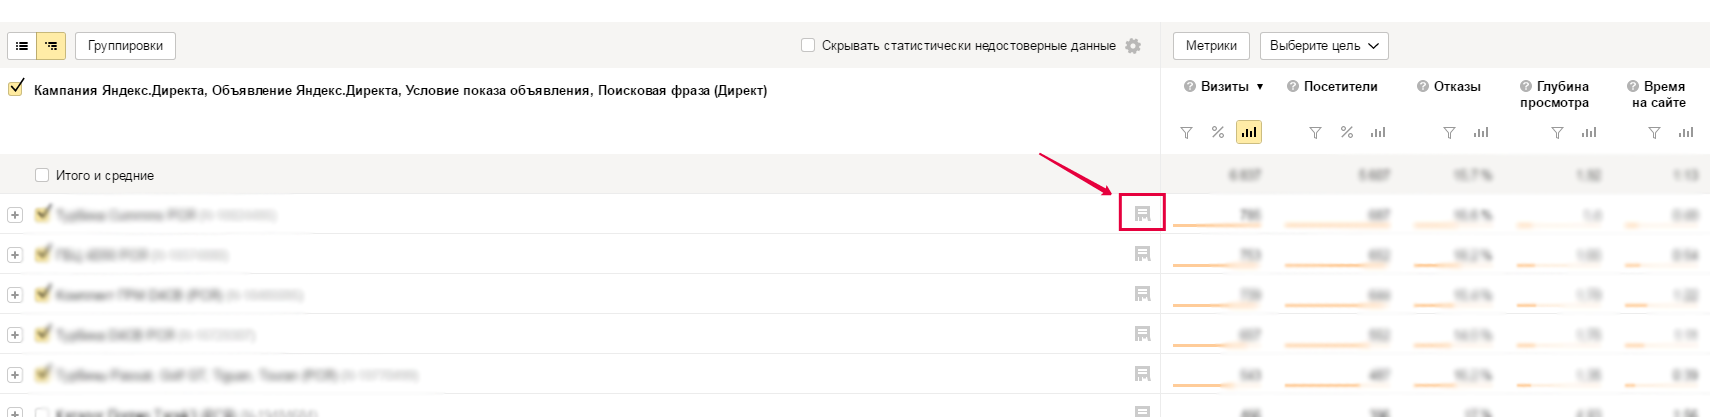 Как снизить цену клика в Яндекс Директ?